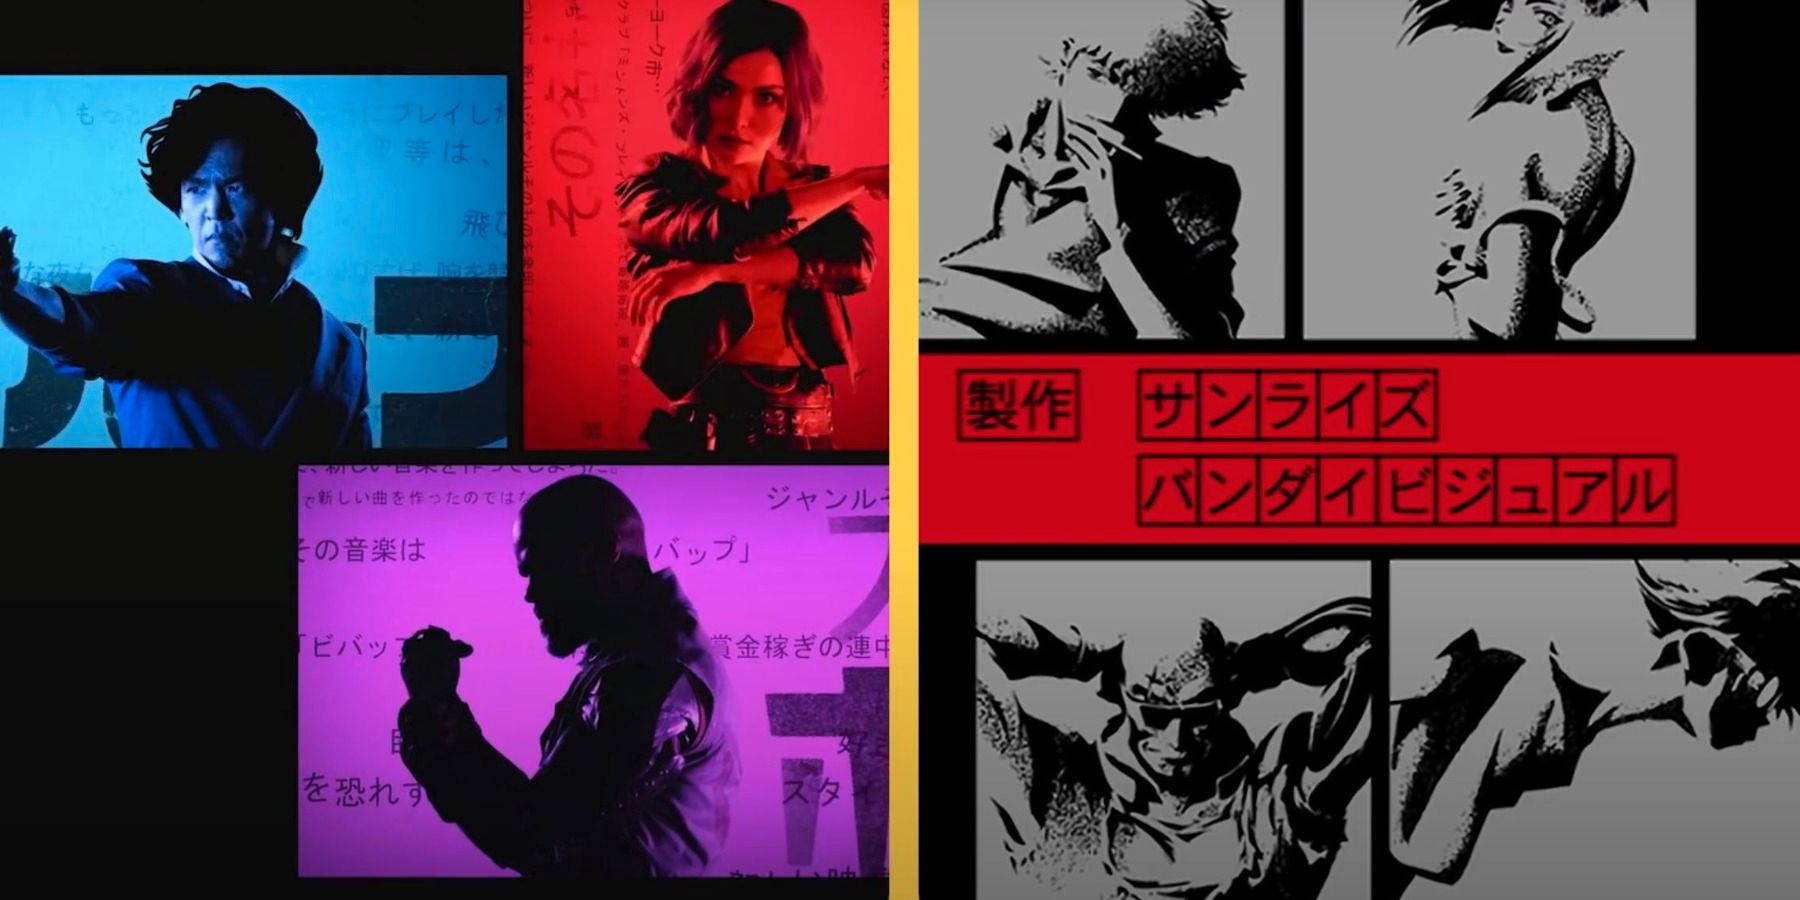 Introducerea Netflix a lui Cowboy Bebop este comparată unul lângă altul cu anime-ul